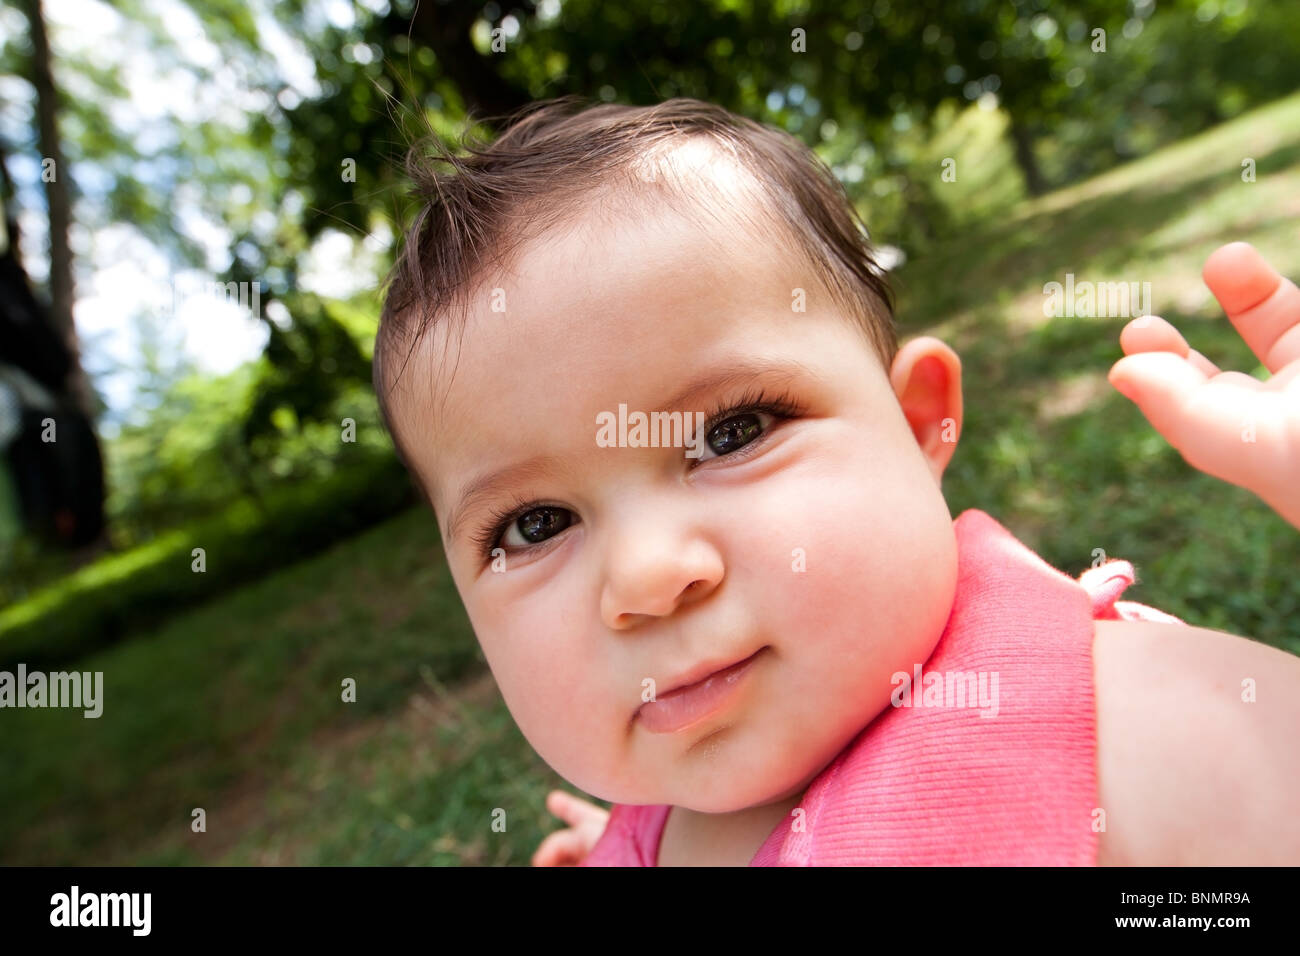 Caricature drôle cute baby face déformée avec de grandes joues potelées d'un blanc brillant fille bébé hispanique avec des yeux dans un parc. Banque D'Images